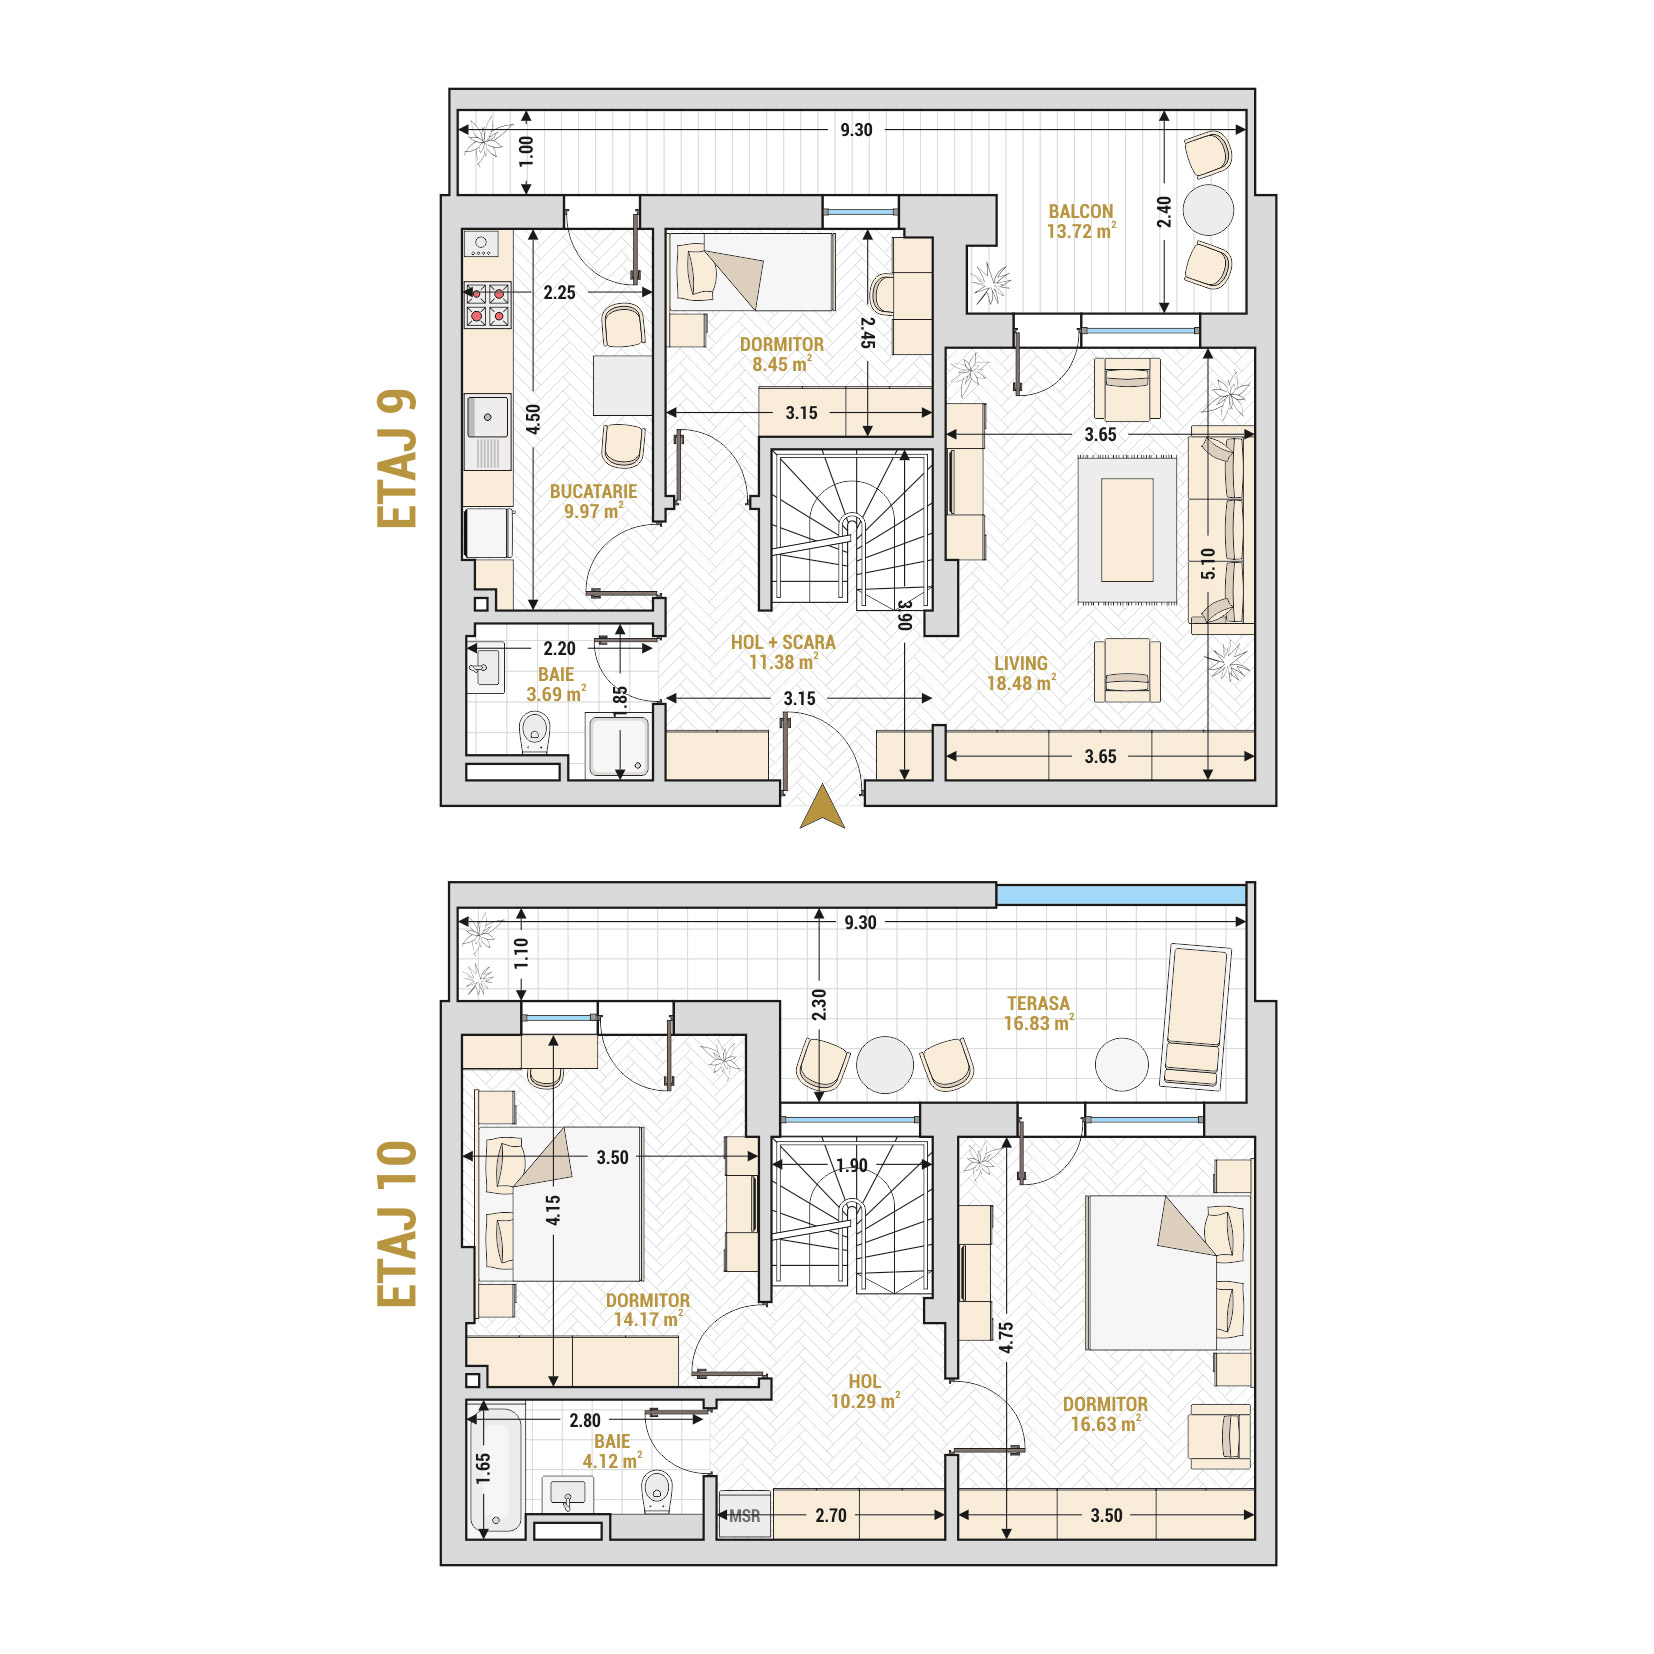 Penthouse 4 Camere Tip 1 Corp 5 - Drumul Taberei Residence - Apartamente de vanzare Bucuresti - Suprafata utila totala - 127.73 mp